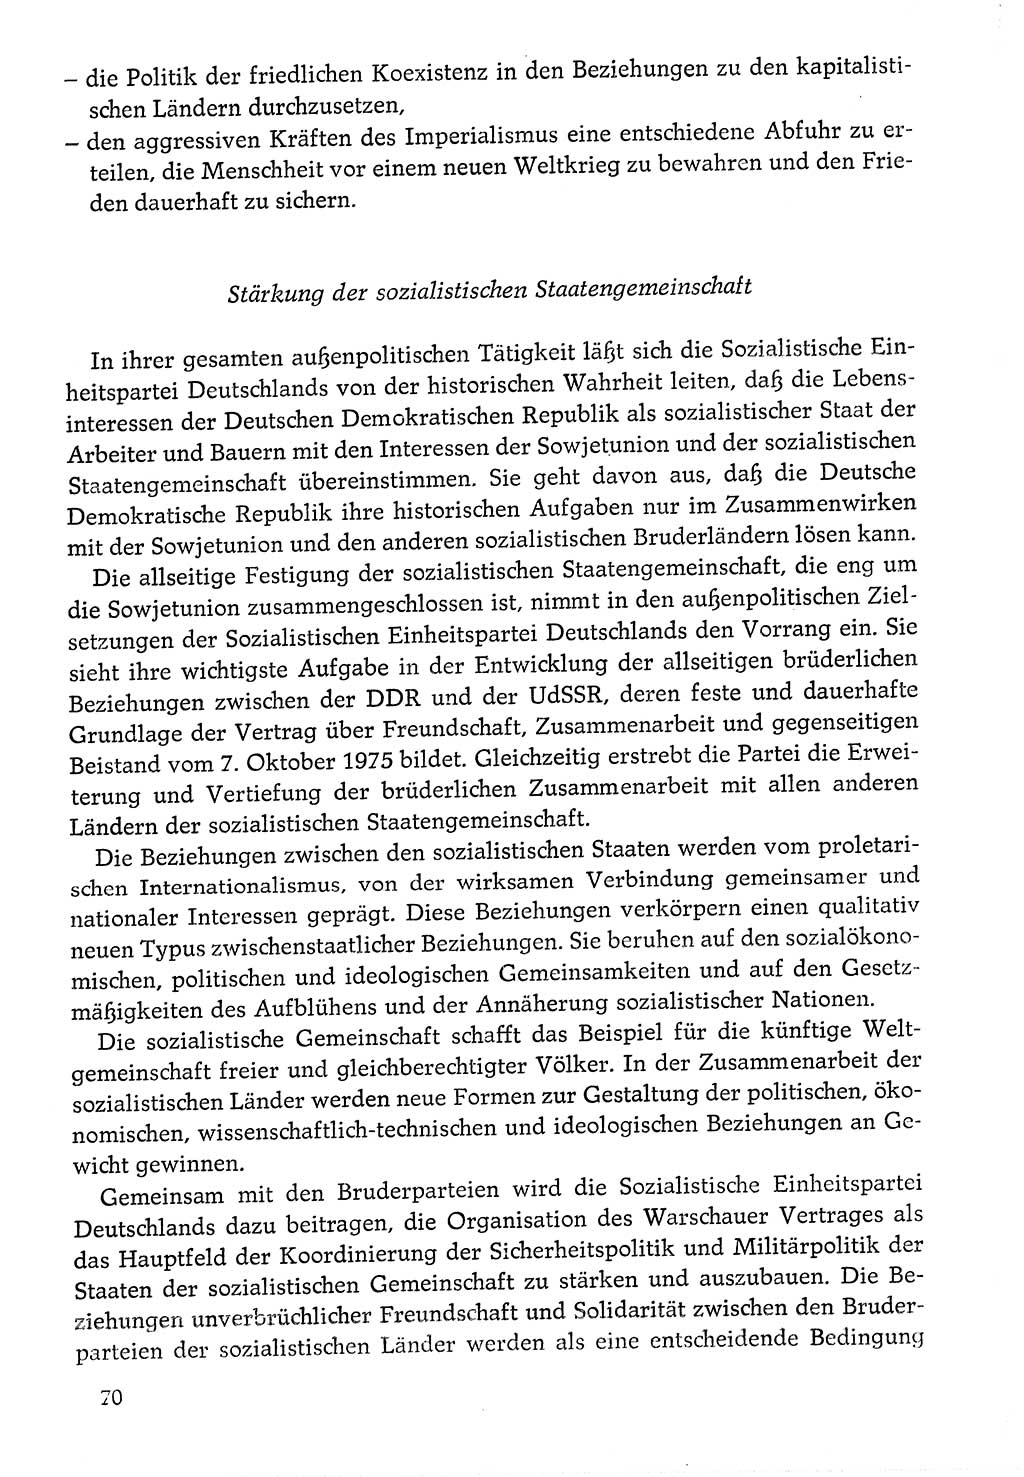 Dokumente der Sozialistischen Einheitspartei Deutschlands (SED) [Deutsche Demokratische Republik (DDR)] 1976-1977, Seite 70 (Dok. SED DDR 1976-1977, S. 70)